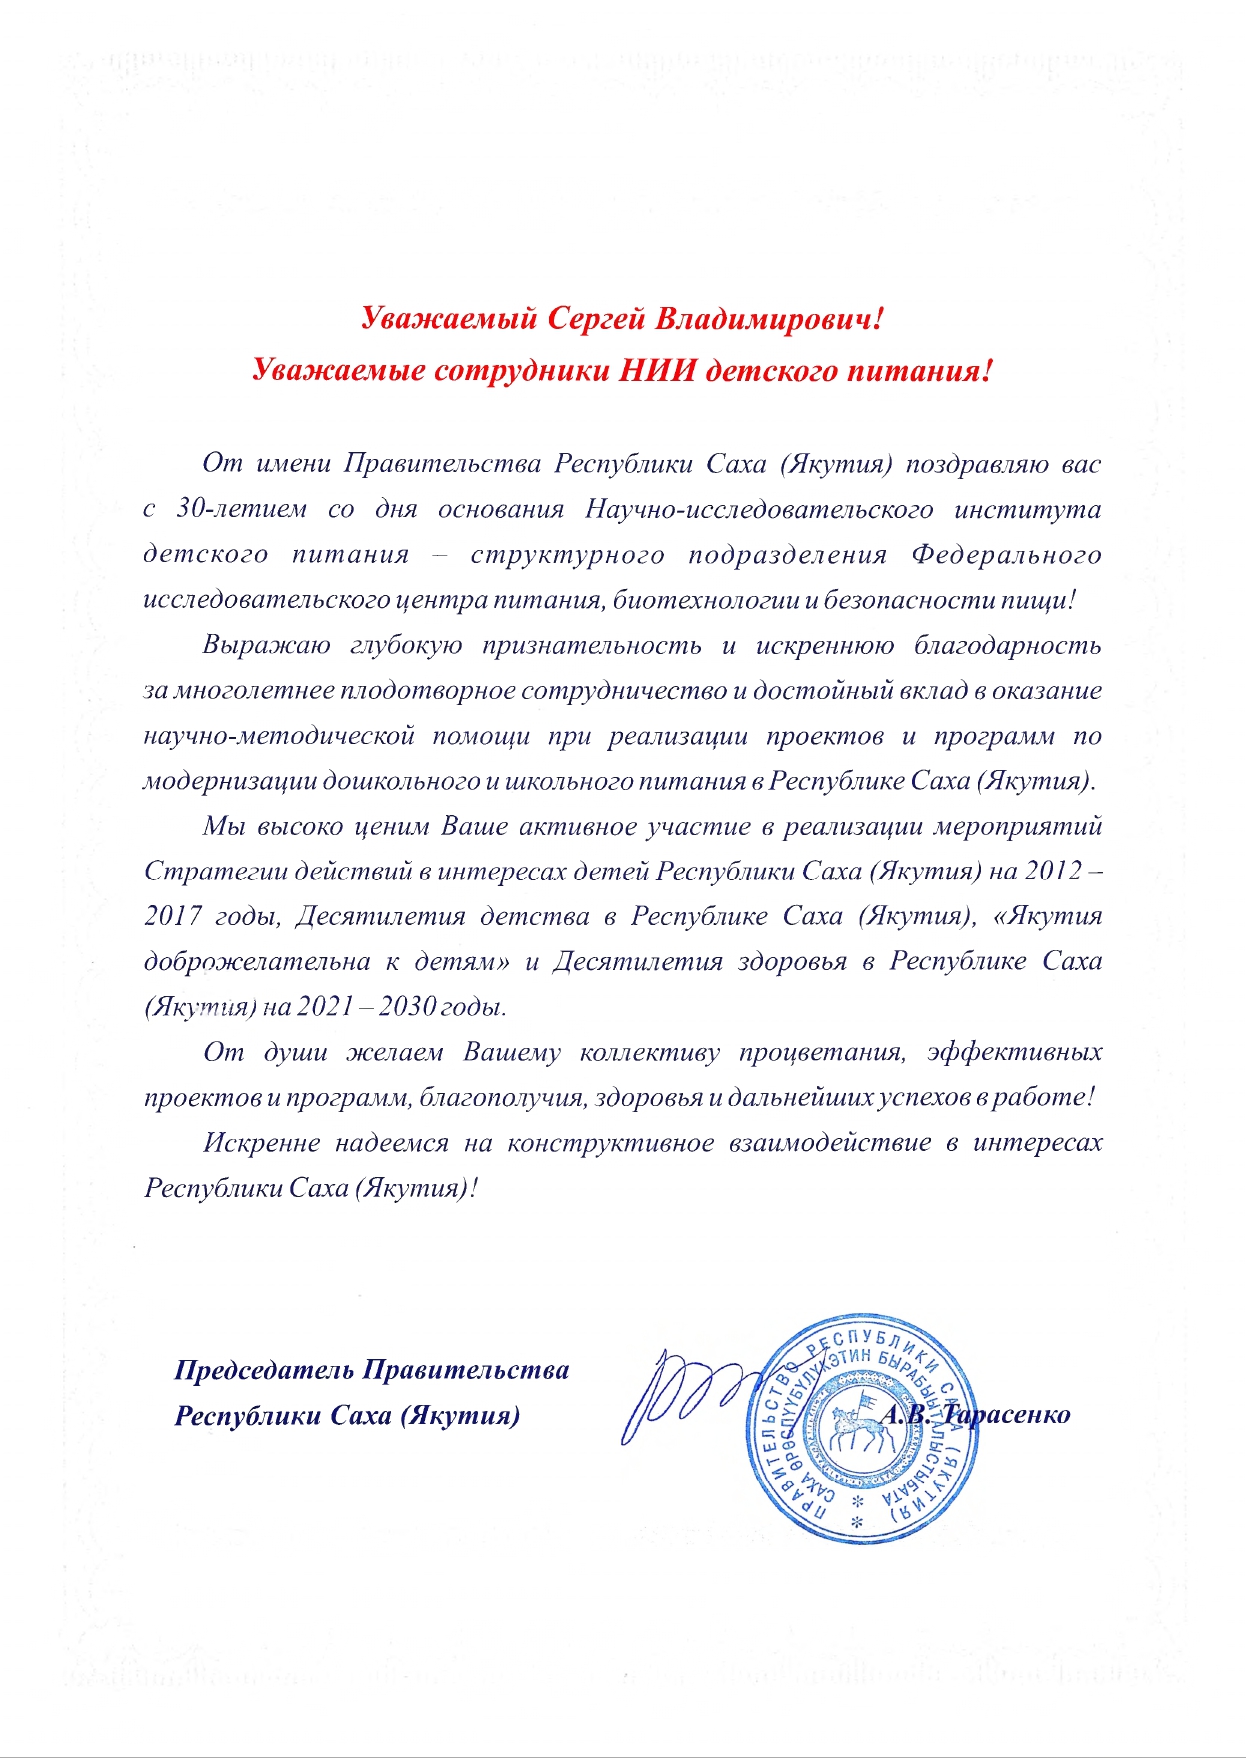 Благодарственное письмо от имени Правительства Республики Саха (Якутия)